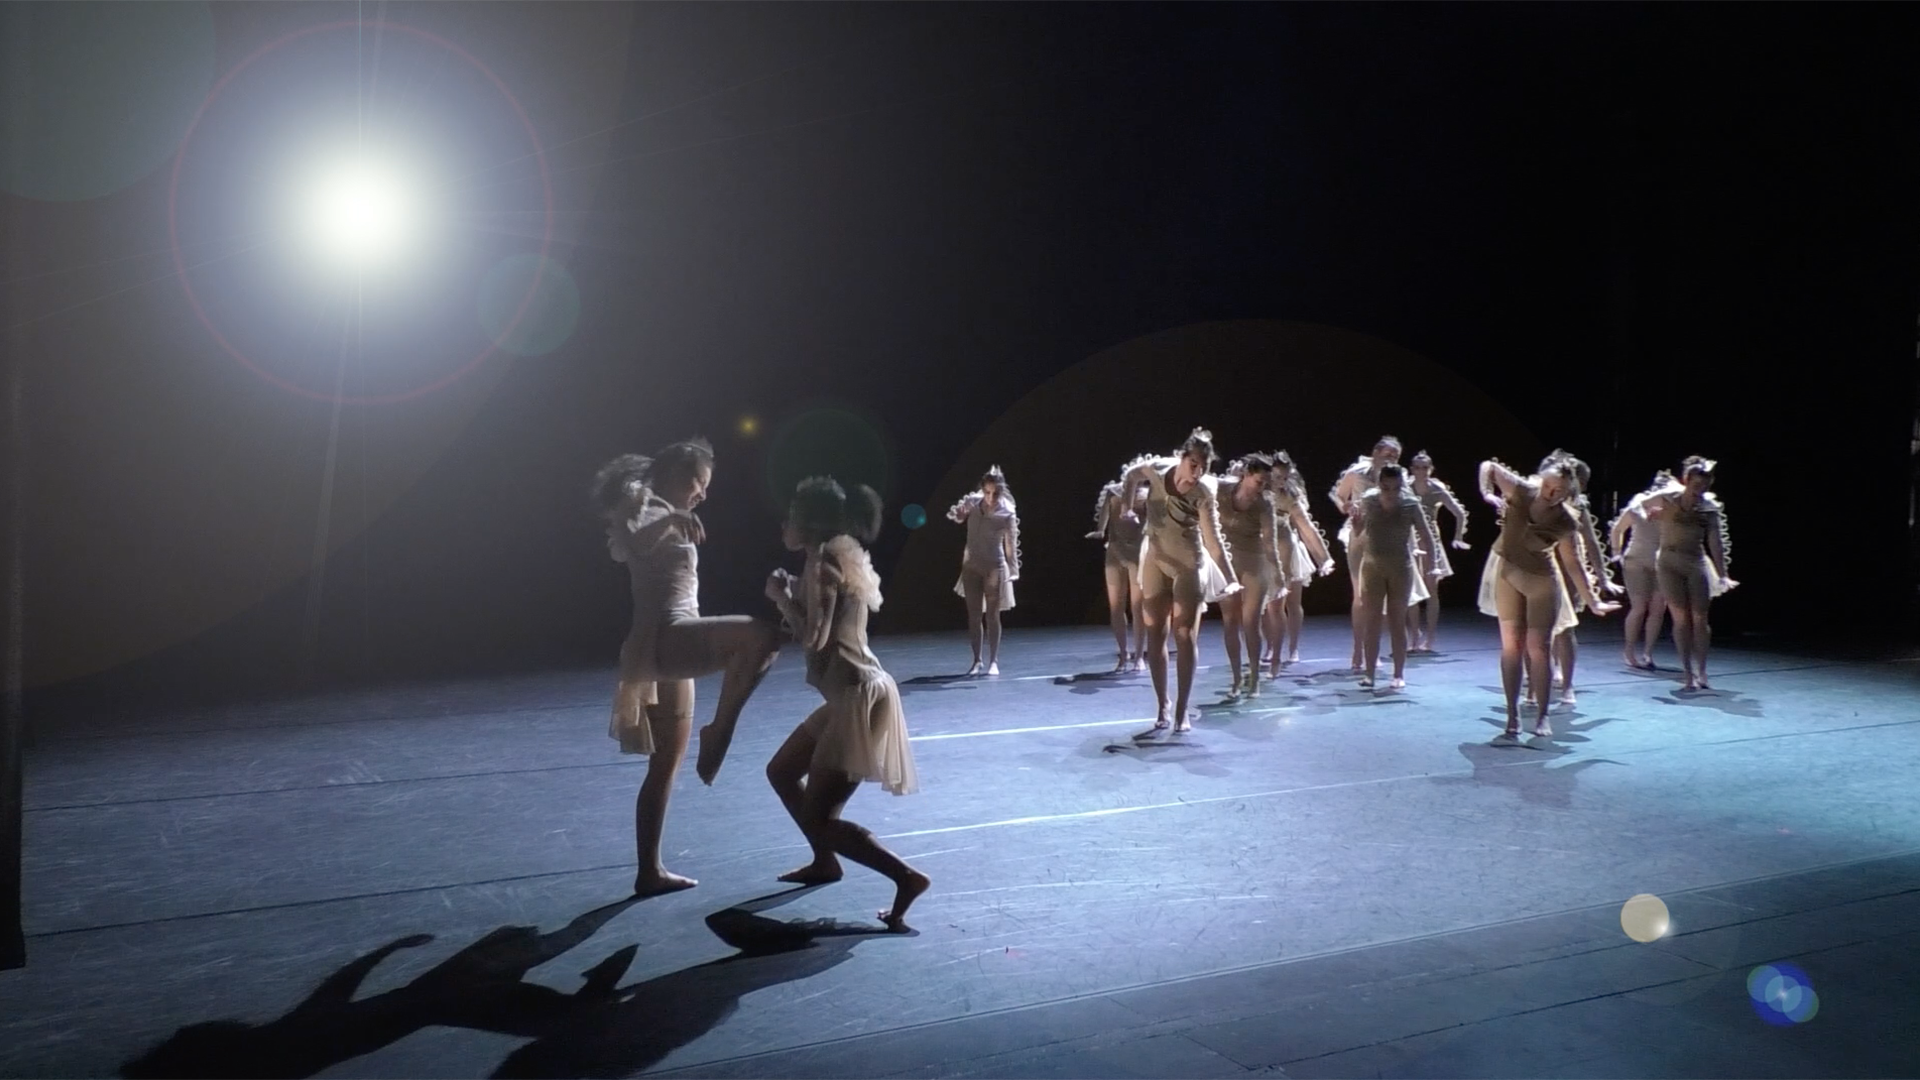 Dancers on stage, backlit by stage light